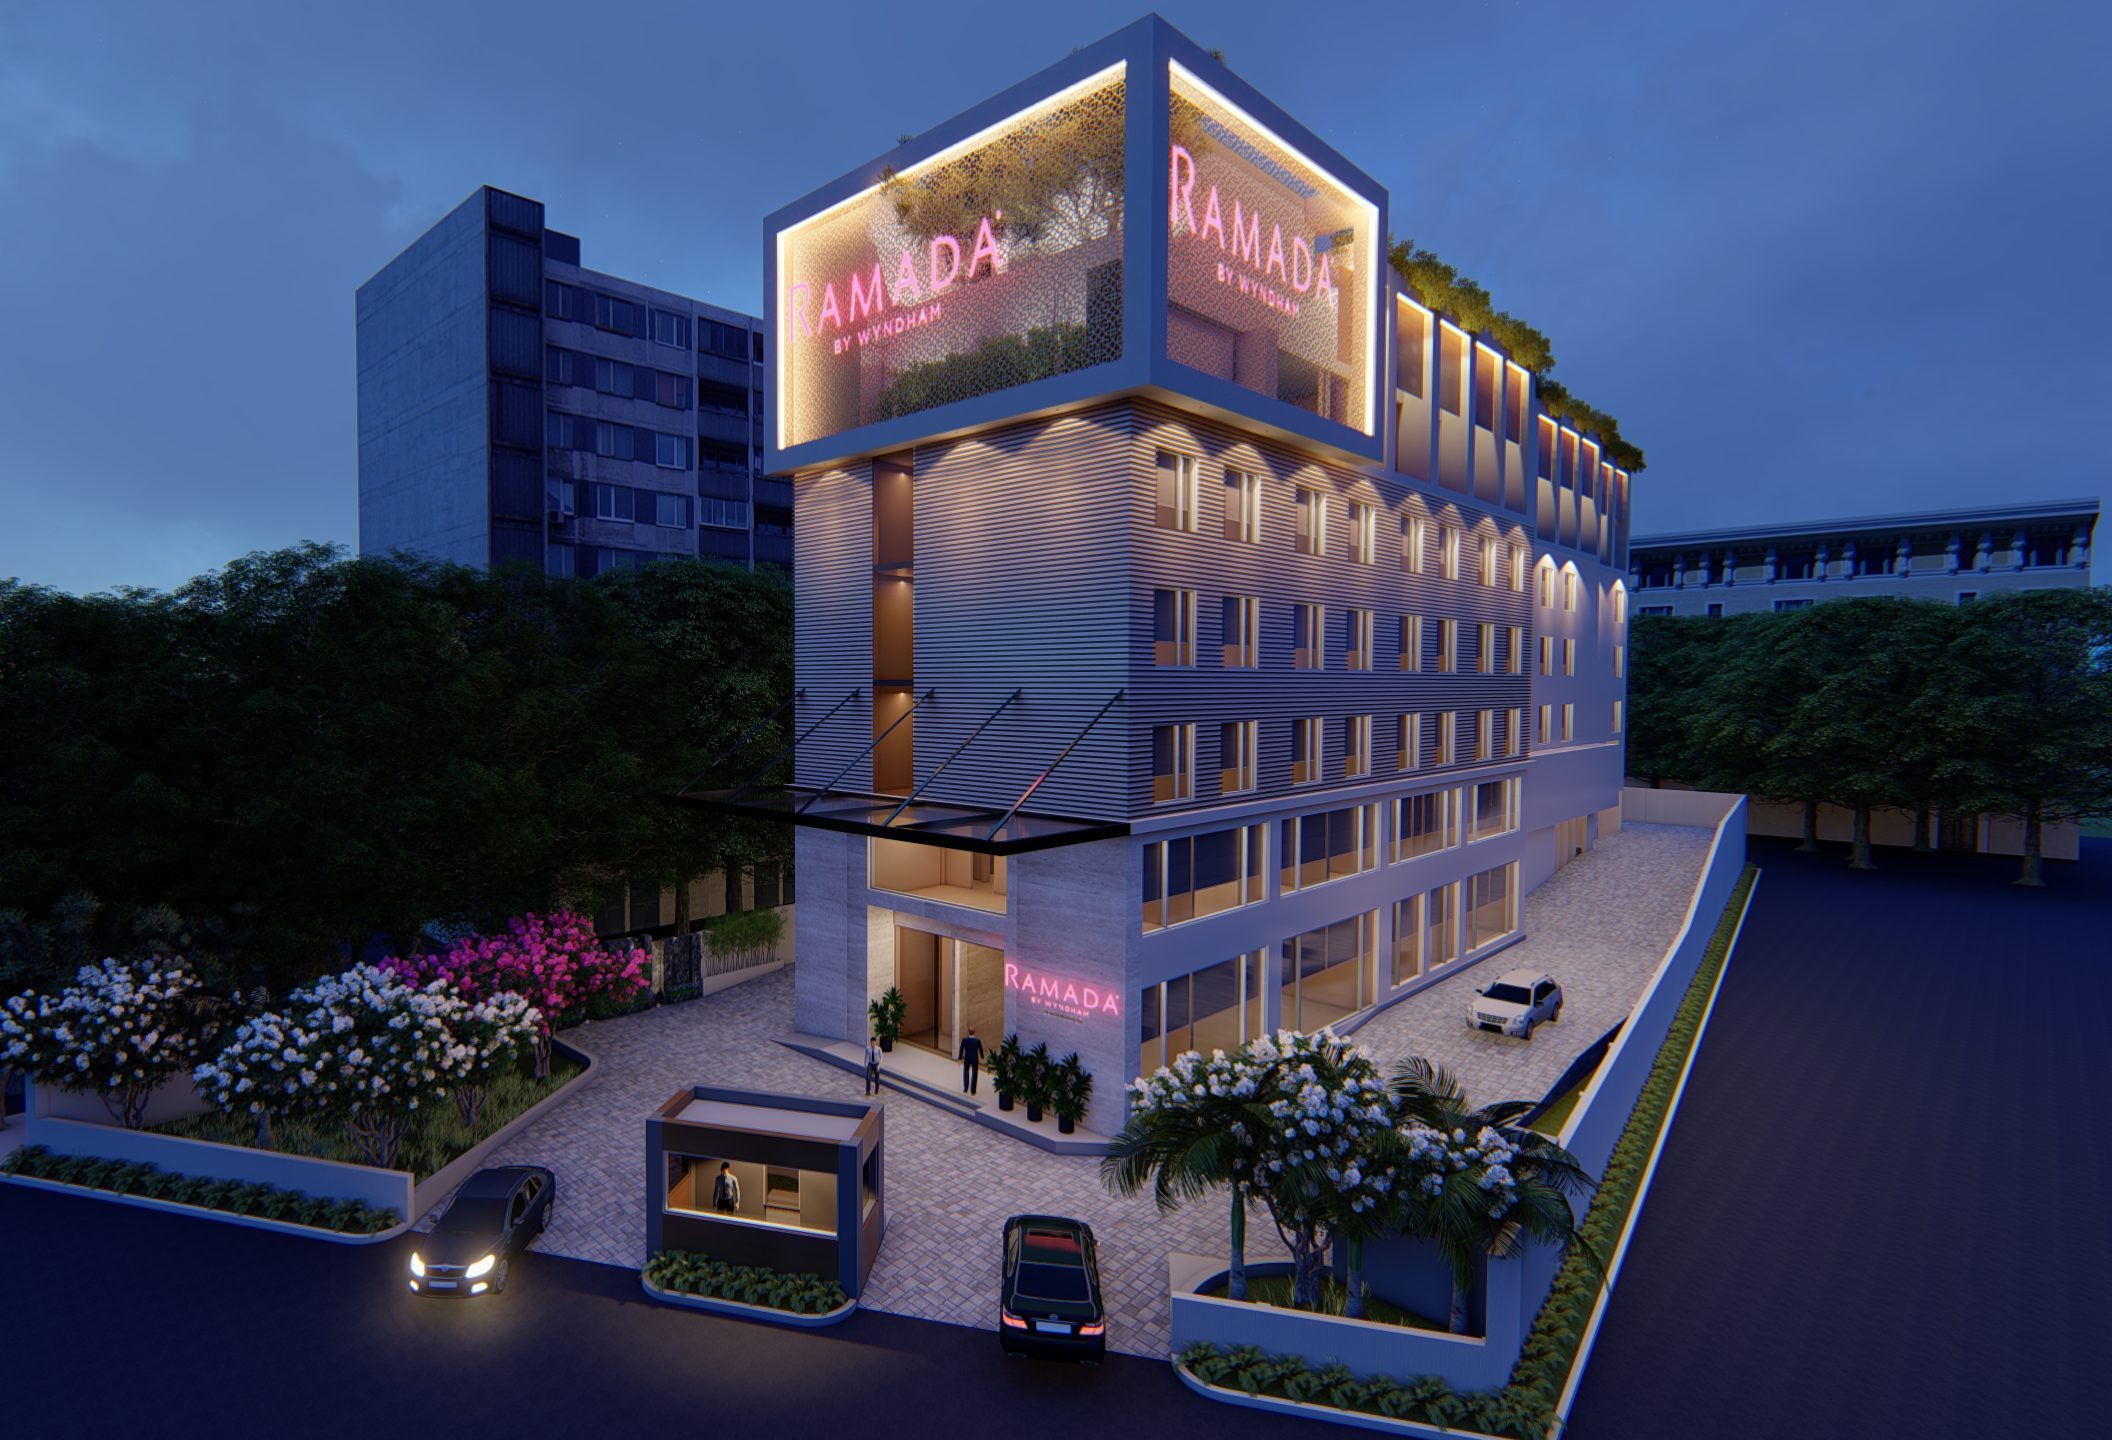 Wyndham signs a Ramada hotel in Gorakhpur